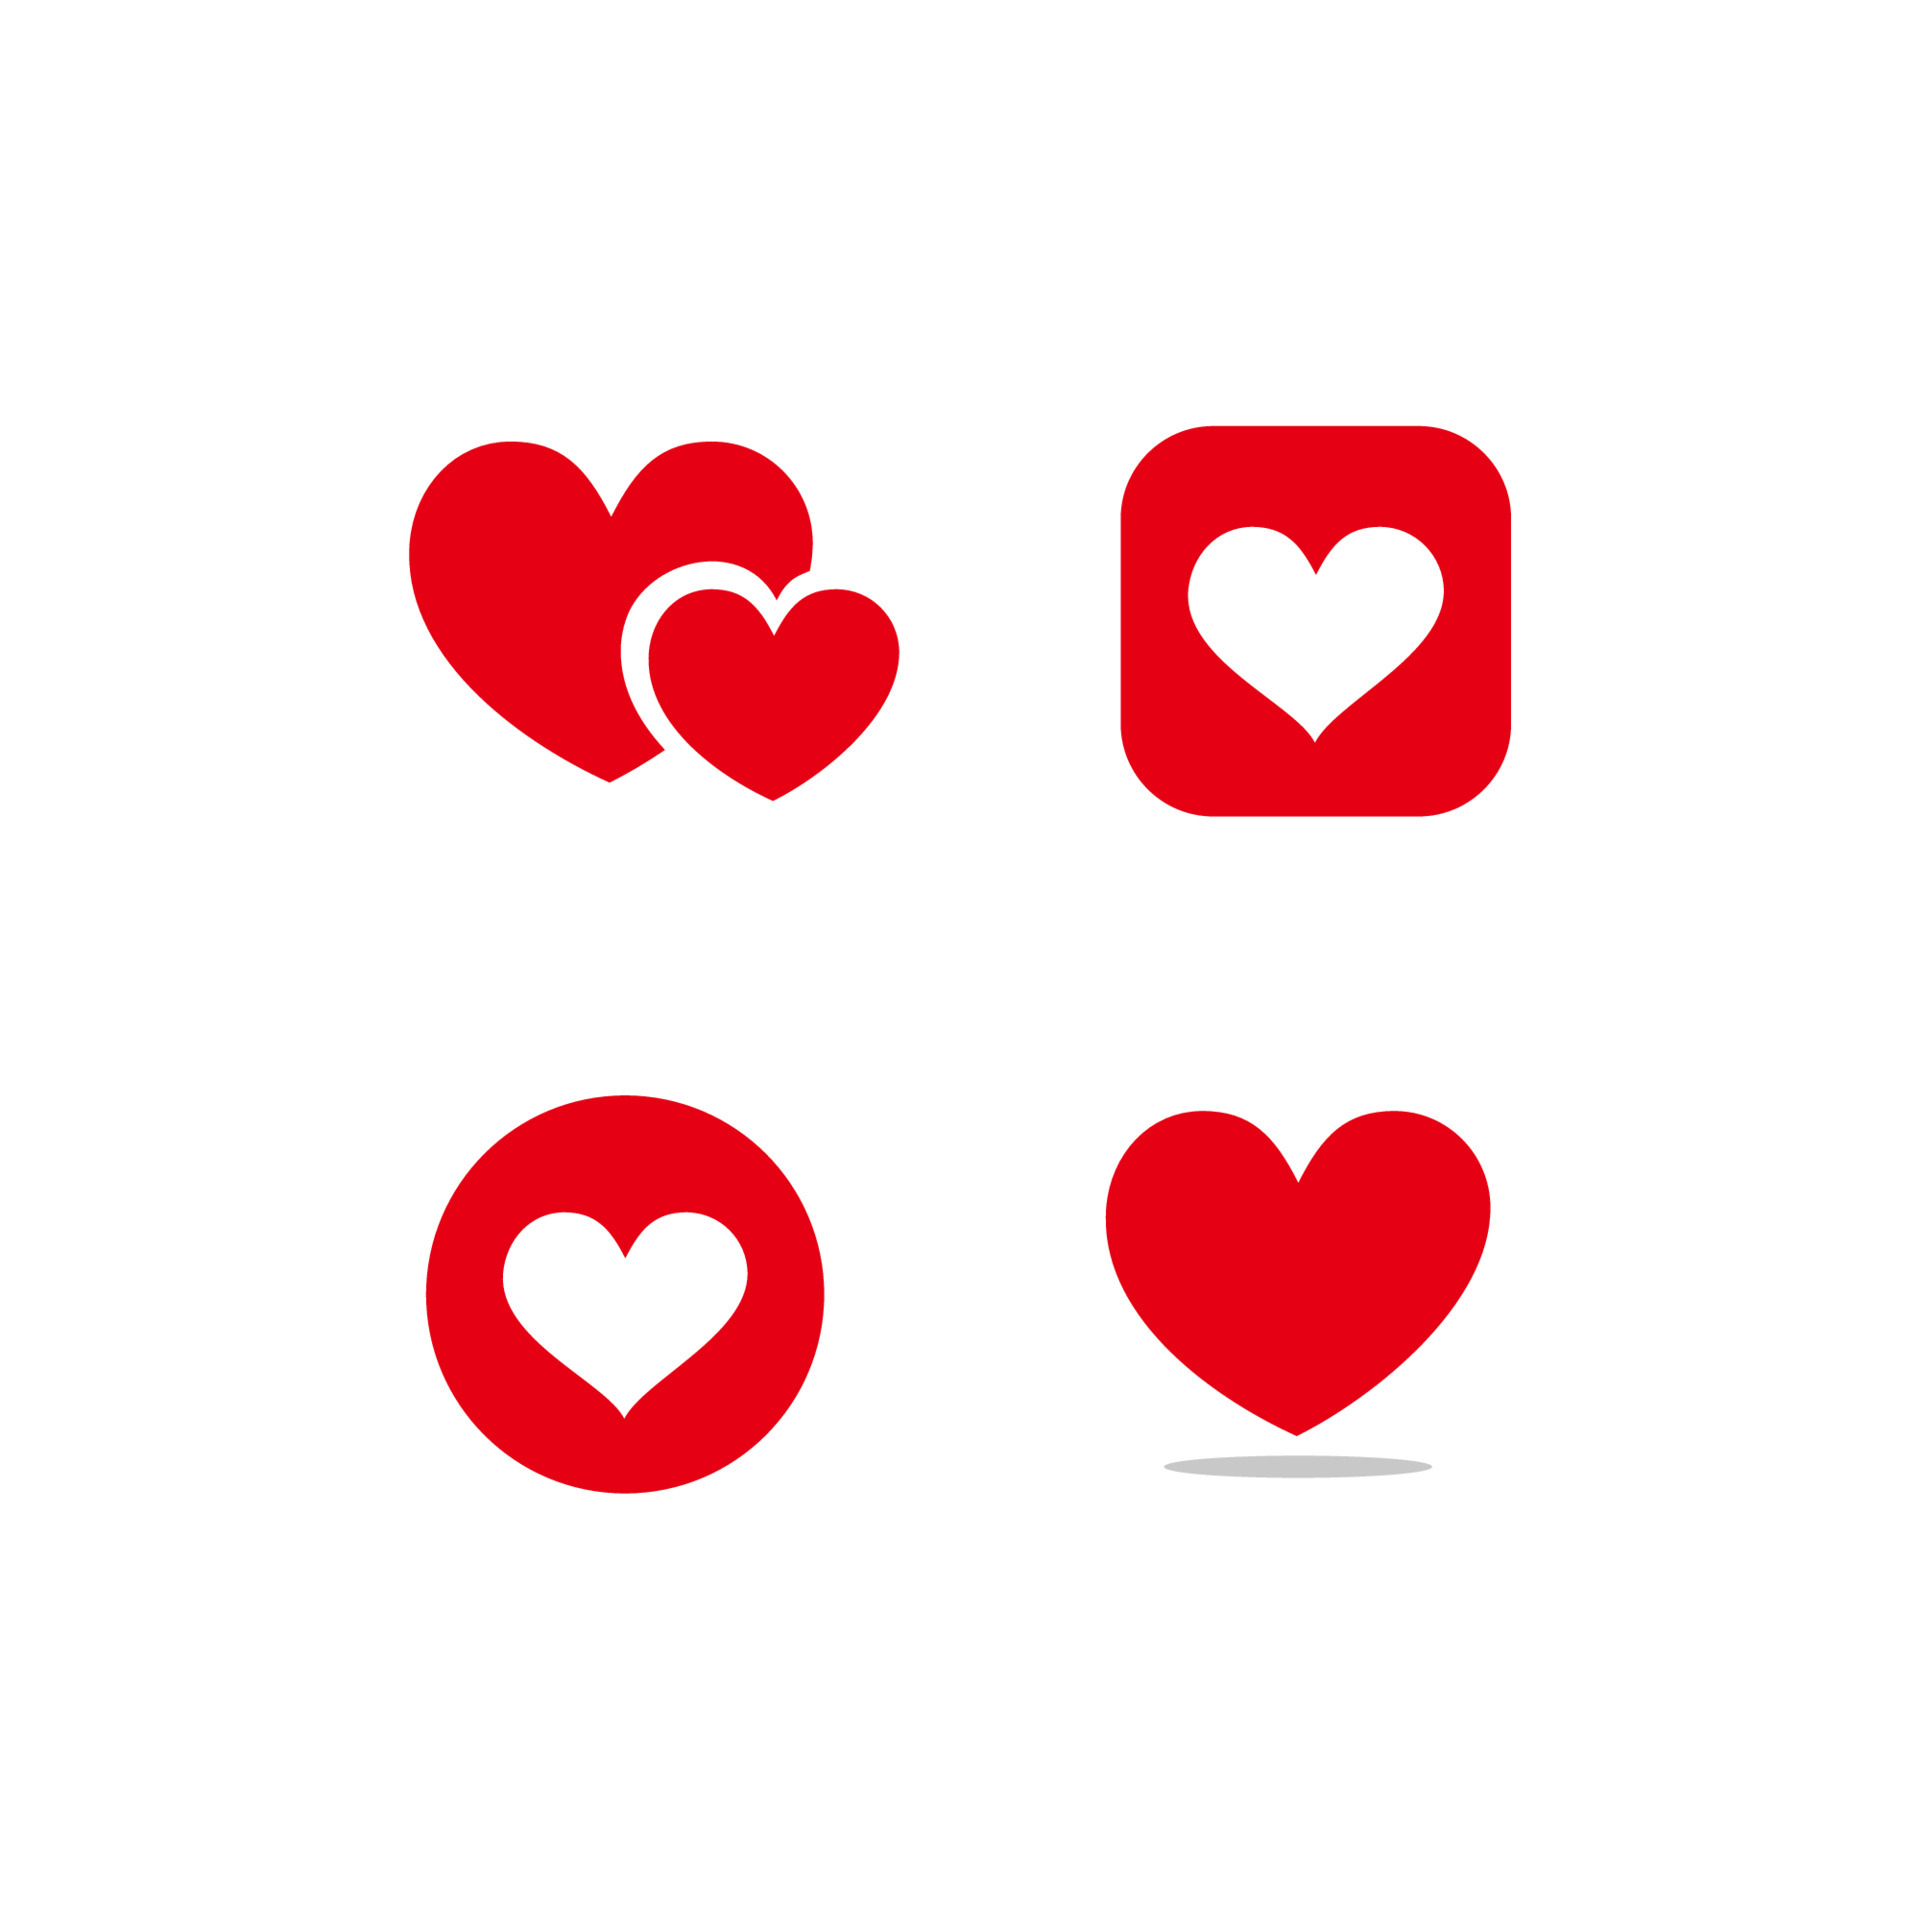 Hình trái tim là biểu tượng tình yêu và sự lãng mạn. Bộ biểu tượng hình trái tim mẫu vector với nhiều mẫu mã và kiểu dáng sẽ giúp bạn thỏa sức sáng tạo và truyền tải cảm xúc của mình. Hãy xem ngay hình ảnh để tìm được mẫu biểu tượng hình trái tim phù hợp nhất với sở thích và nhu cầu của bạn.